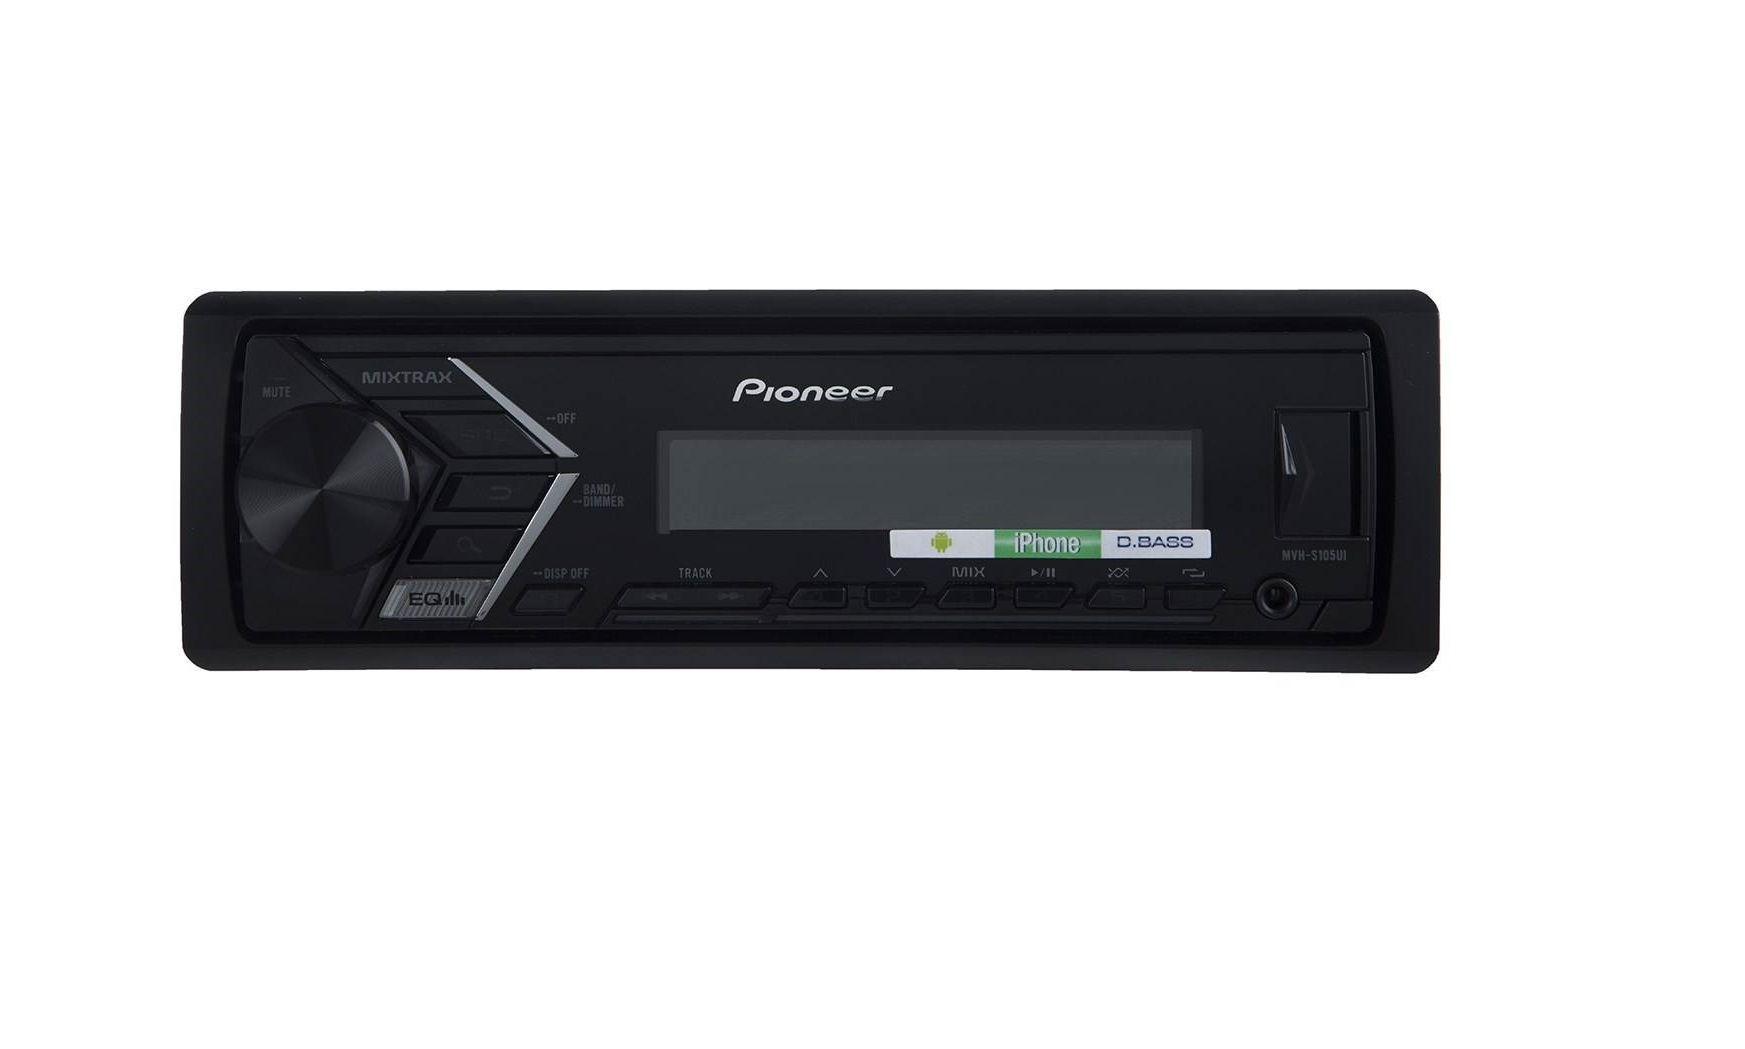 ضبط (هد یونیت) بدون دیسک پایونیر Pioneer MVH-S125UI